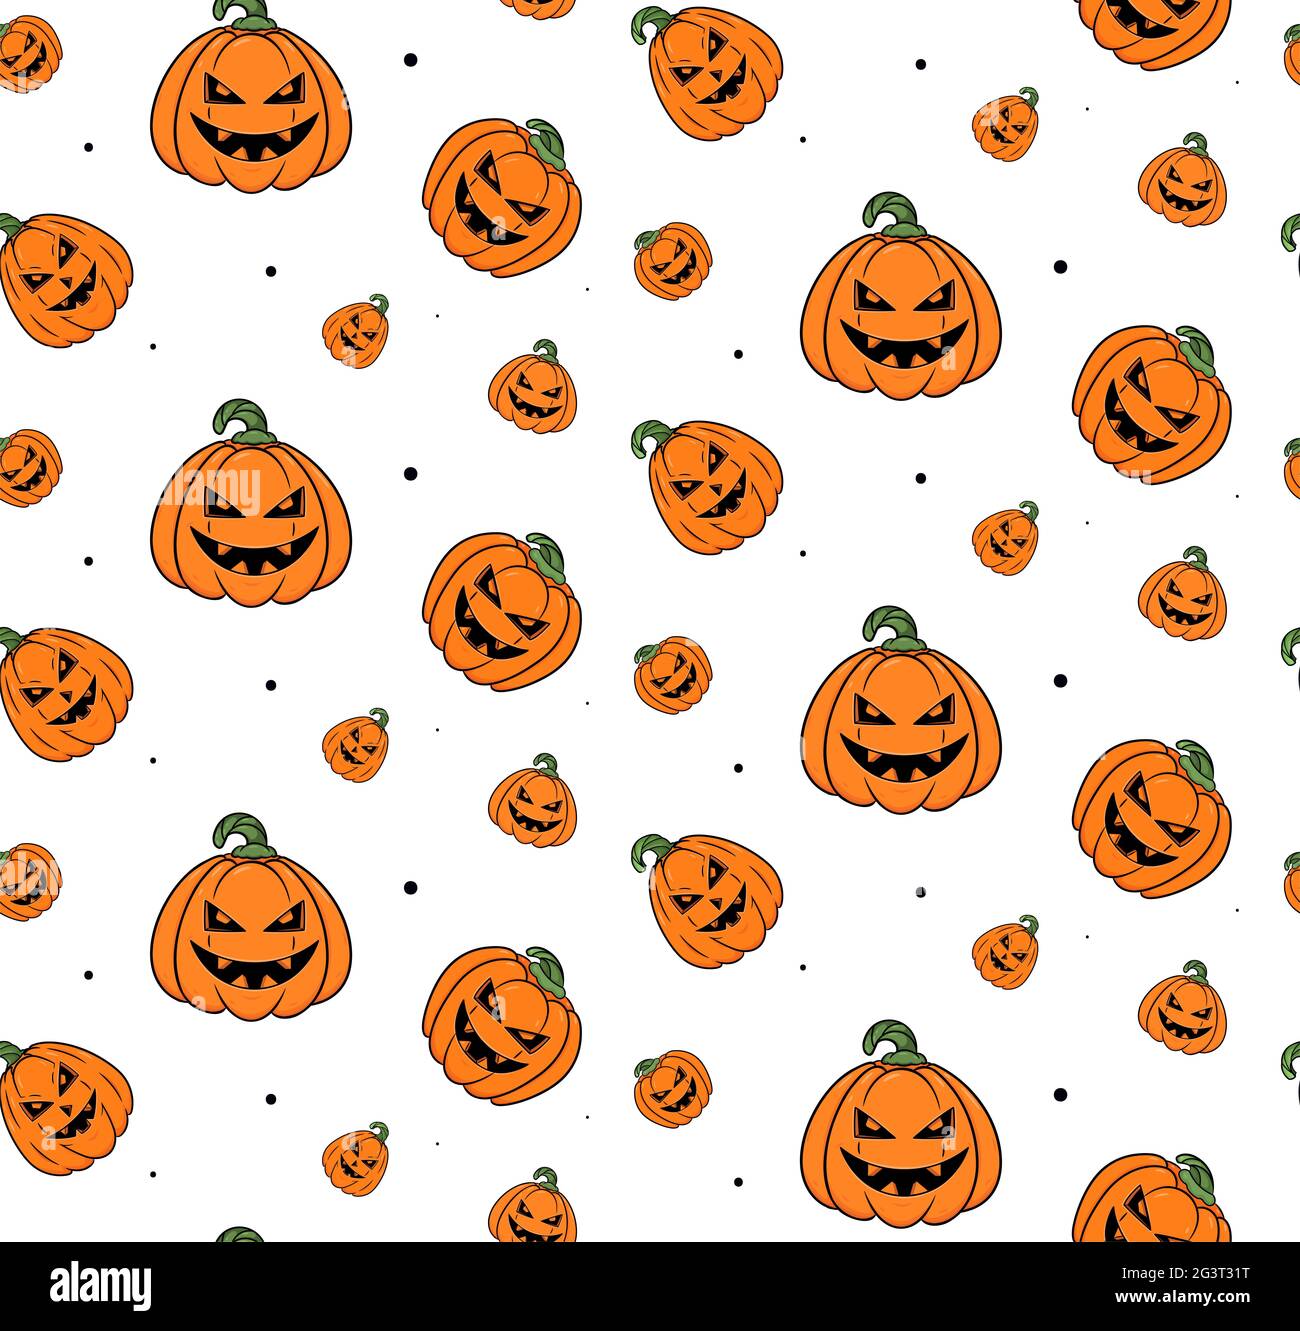 Motif uniforme de citrouilles d'Halloween sur fond blanc Photo Stock - Alamy